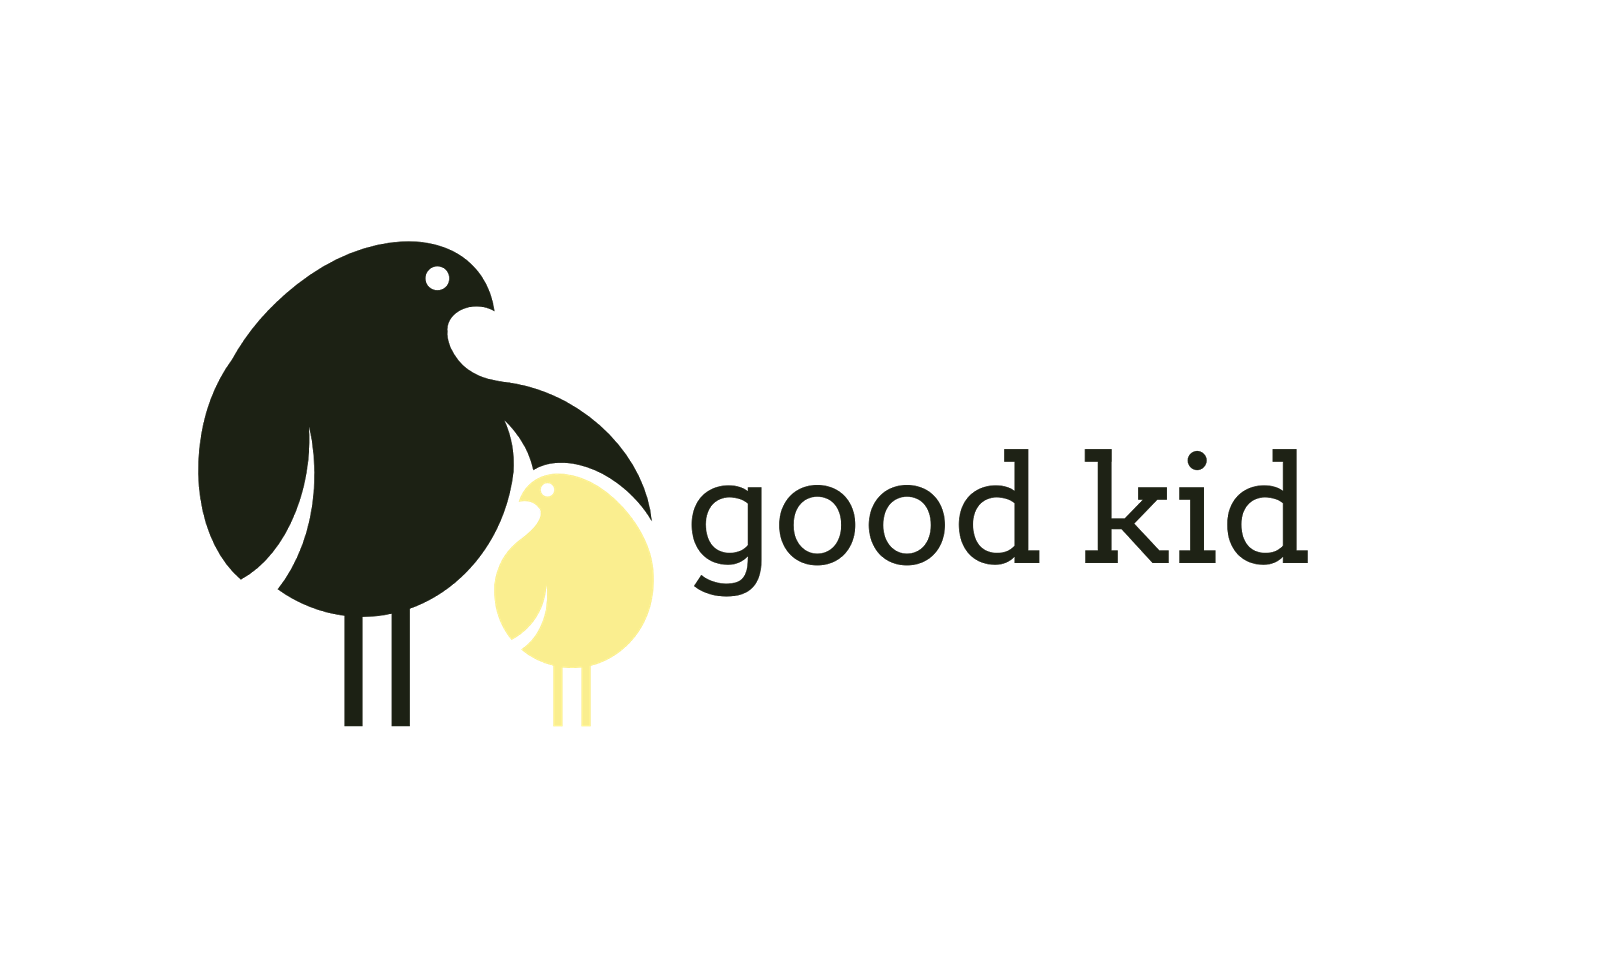 Good Kid